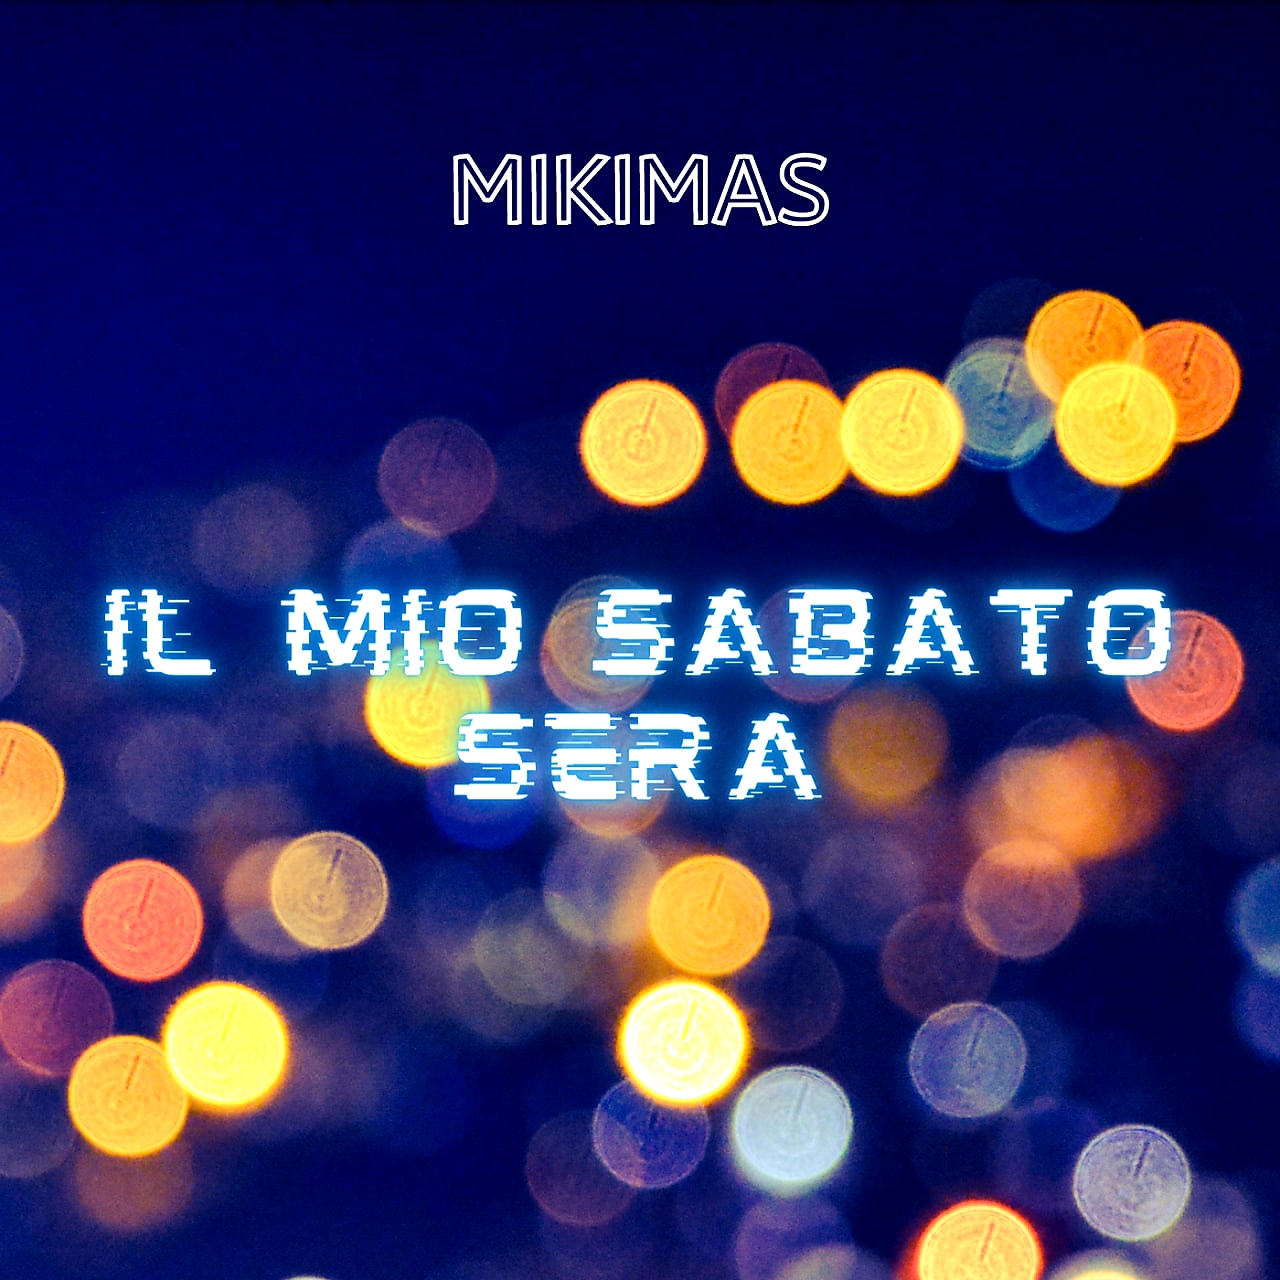 Il mio sabato sera, disponibile da oggi il nuovo singolo del cantautore Mikimas